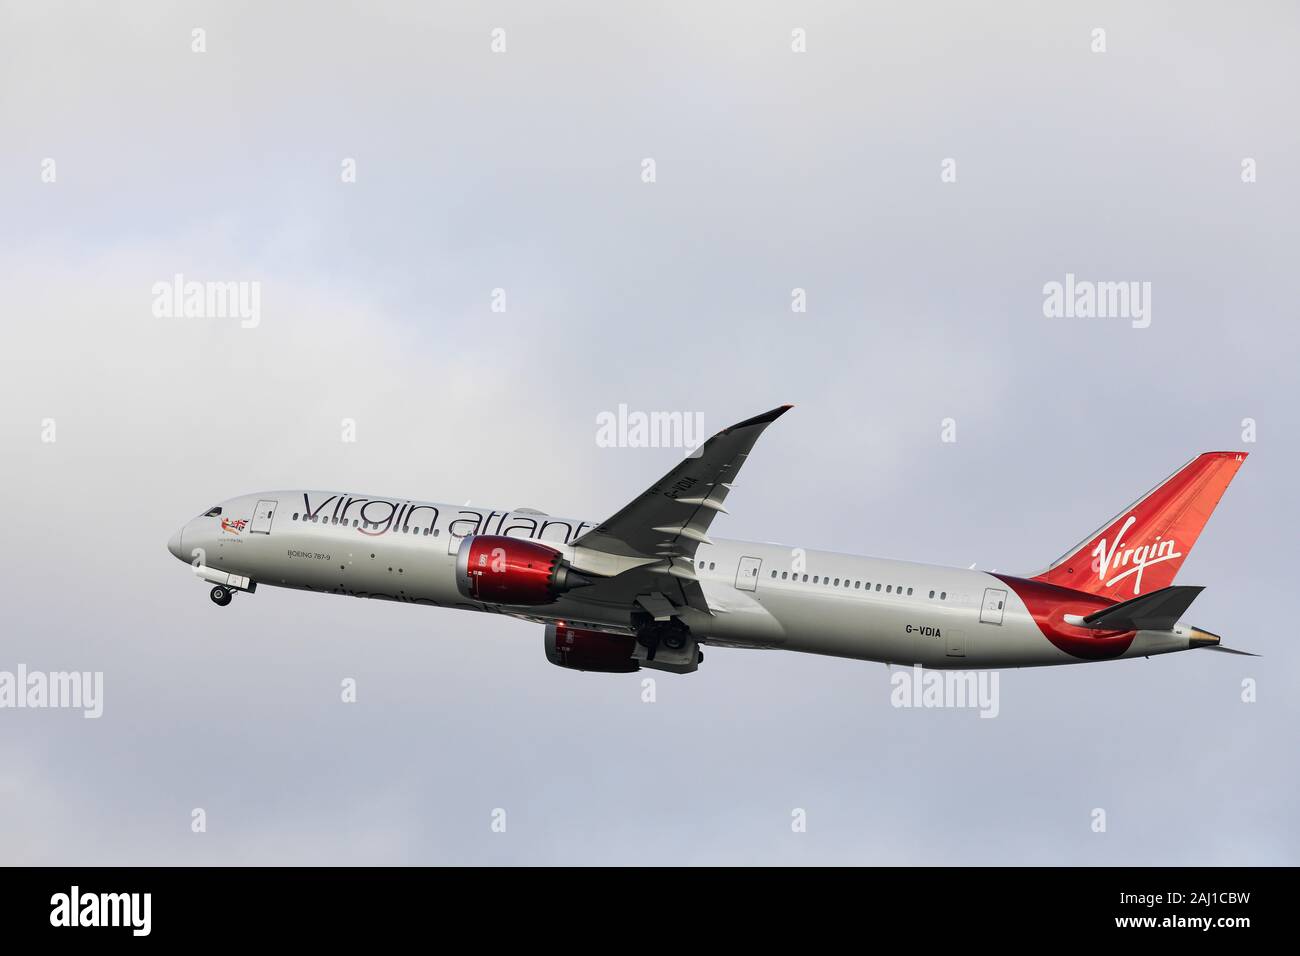 Le Boeing 787 Dreamliner de Virgin Atlantic a pris son endépart le 29 décembre 2019 à l'aéroport de Londres Heathrow, Middlesex, Royaume-Uni Banque D'Images